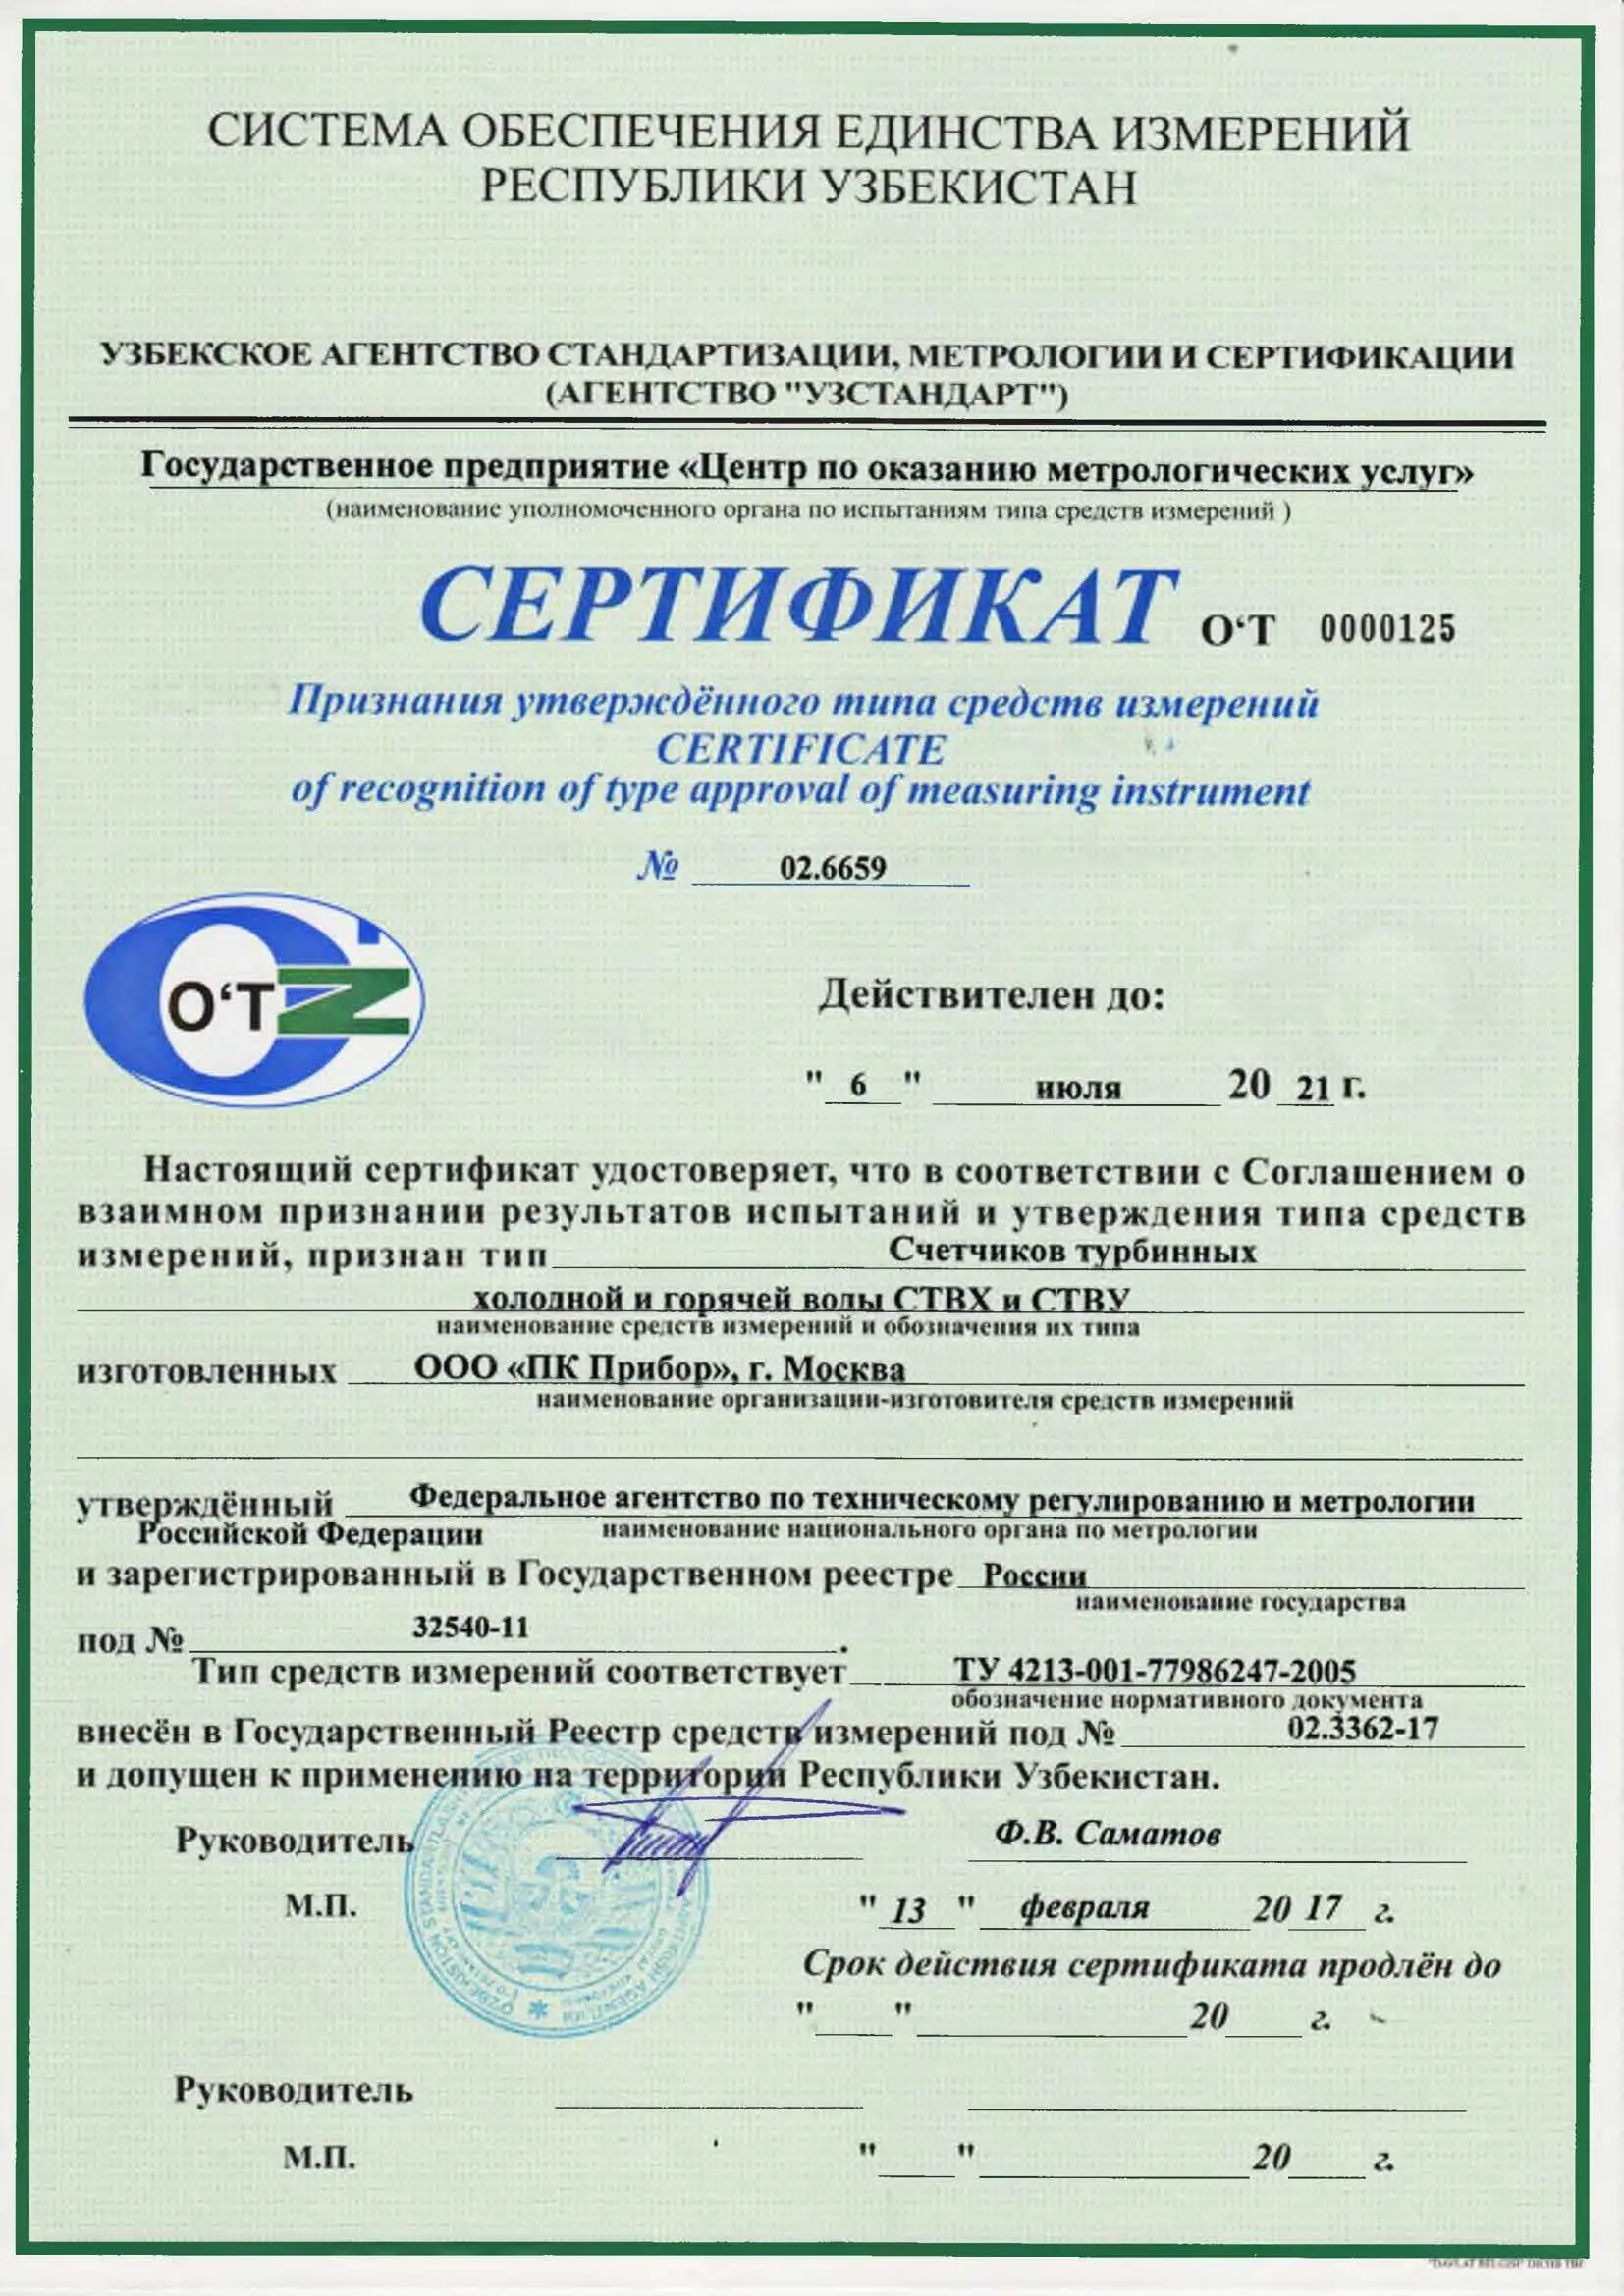 Сертификат признания утверждённого типа СТВХ и СТВУ, Узбекистан, до 06.07.2021 (архив)